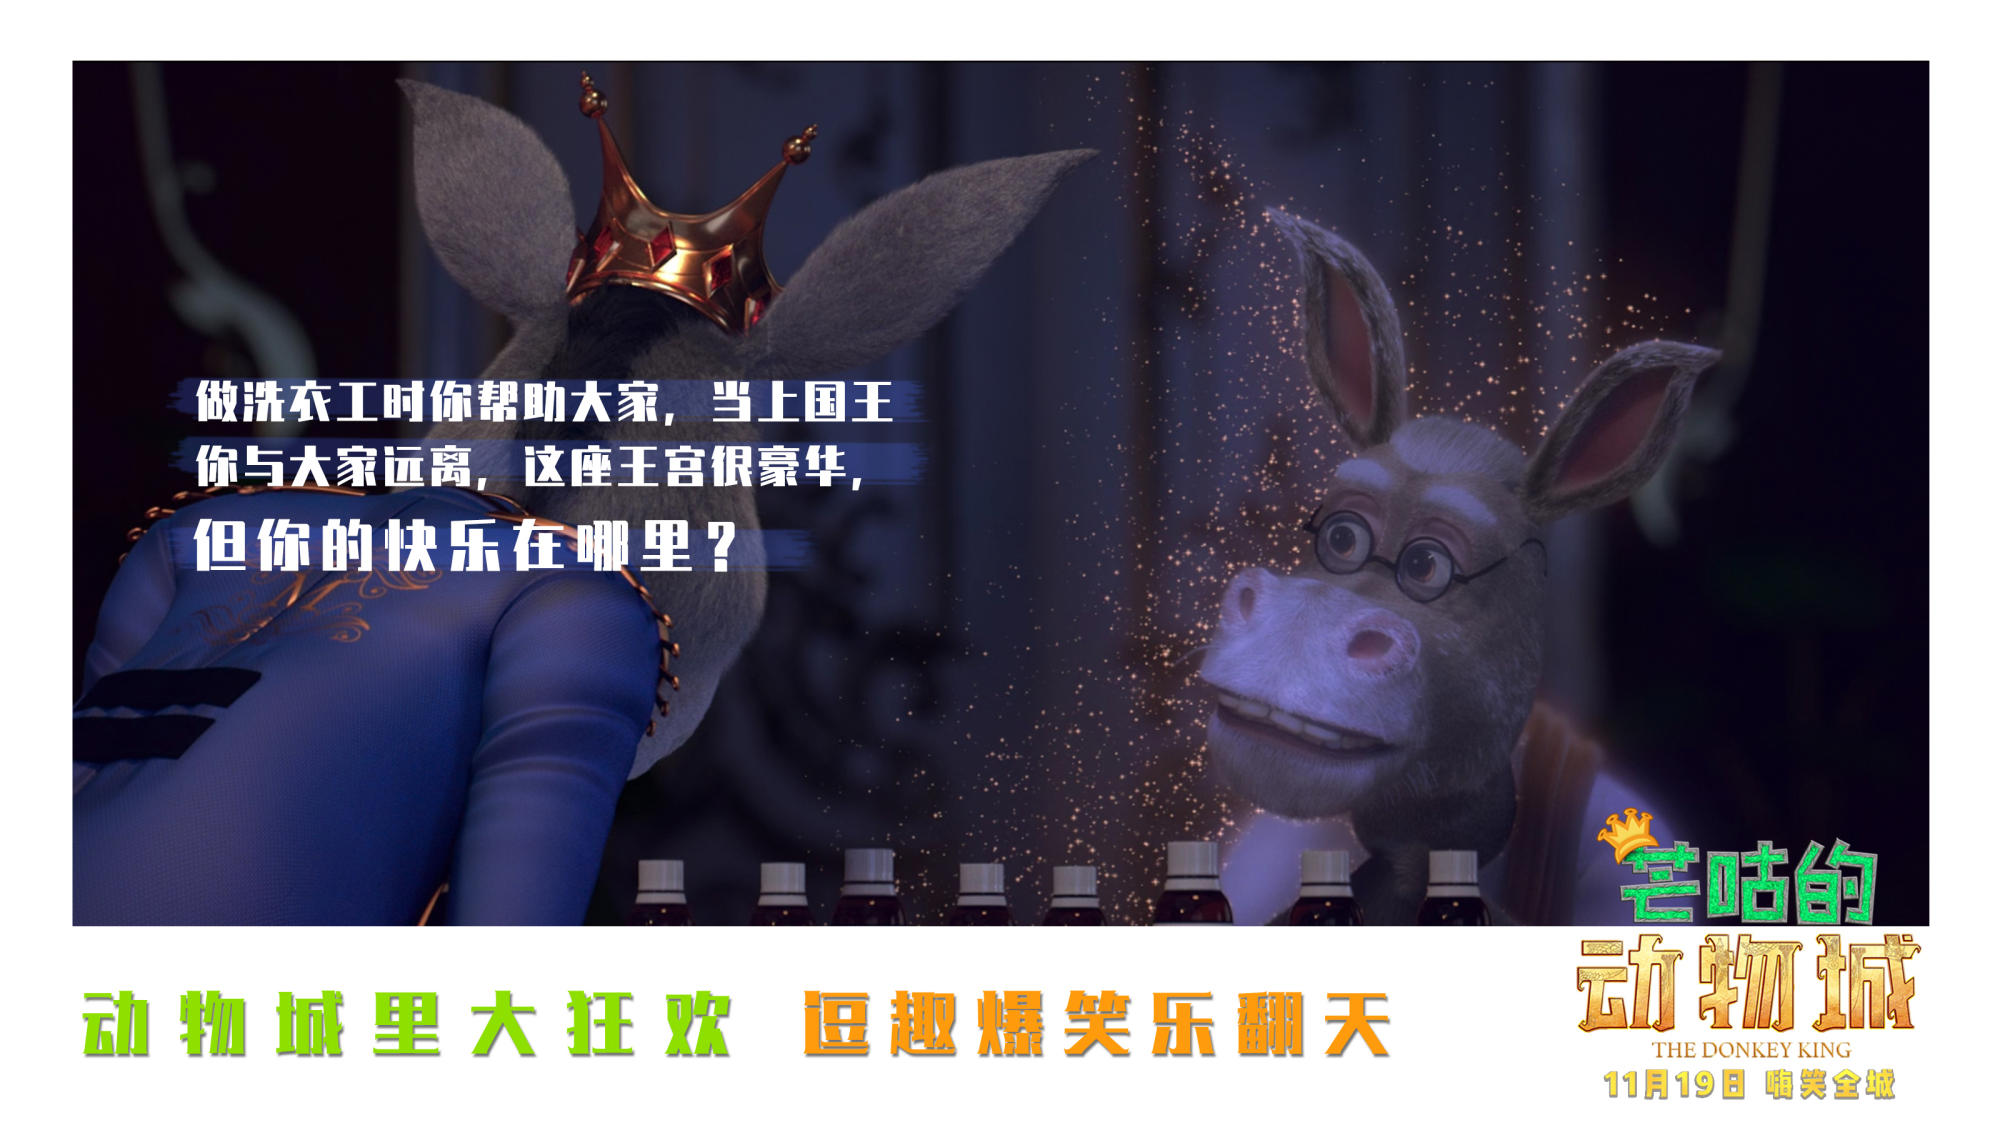 “暖心金句”海报励志曝光！11月19日《芒咕的动物城》勇敢追梦